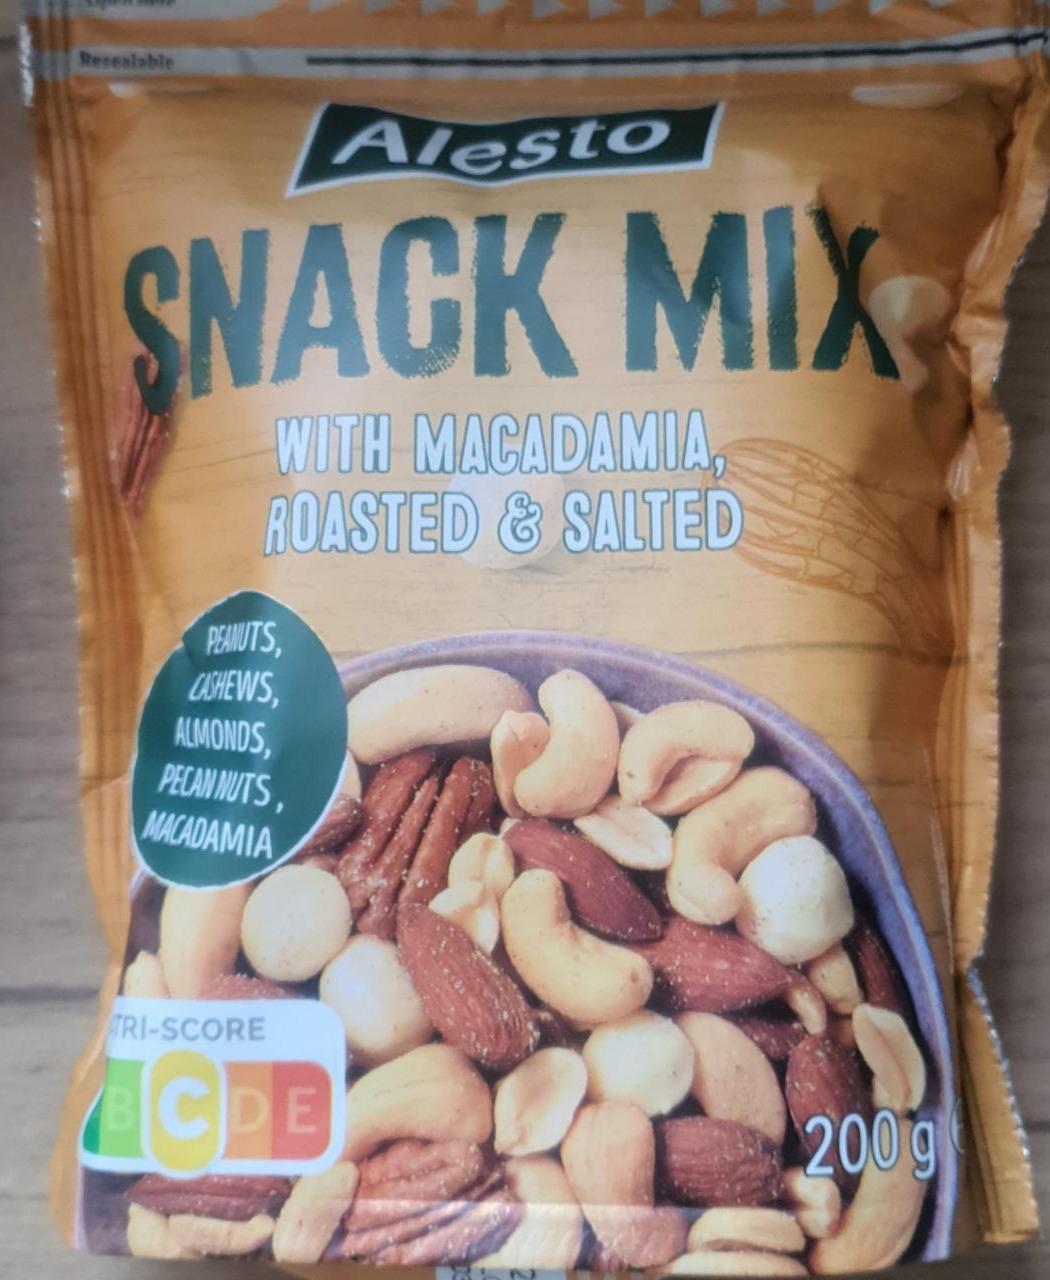 Zdjęcia - Snack Mix with Macadamia, Roasted & Salted Alesto